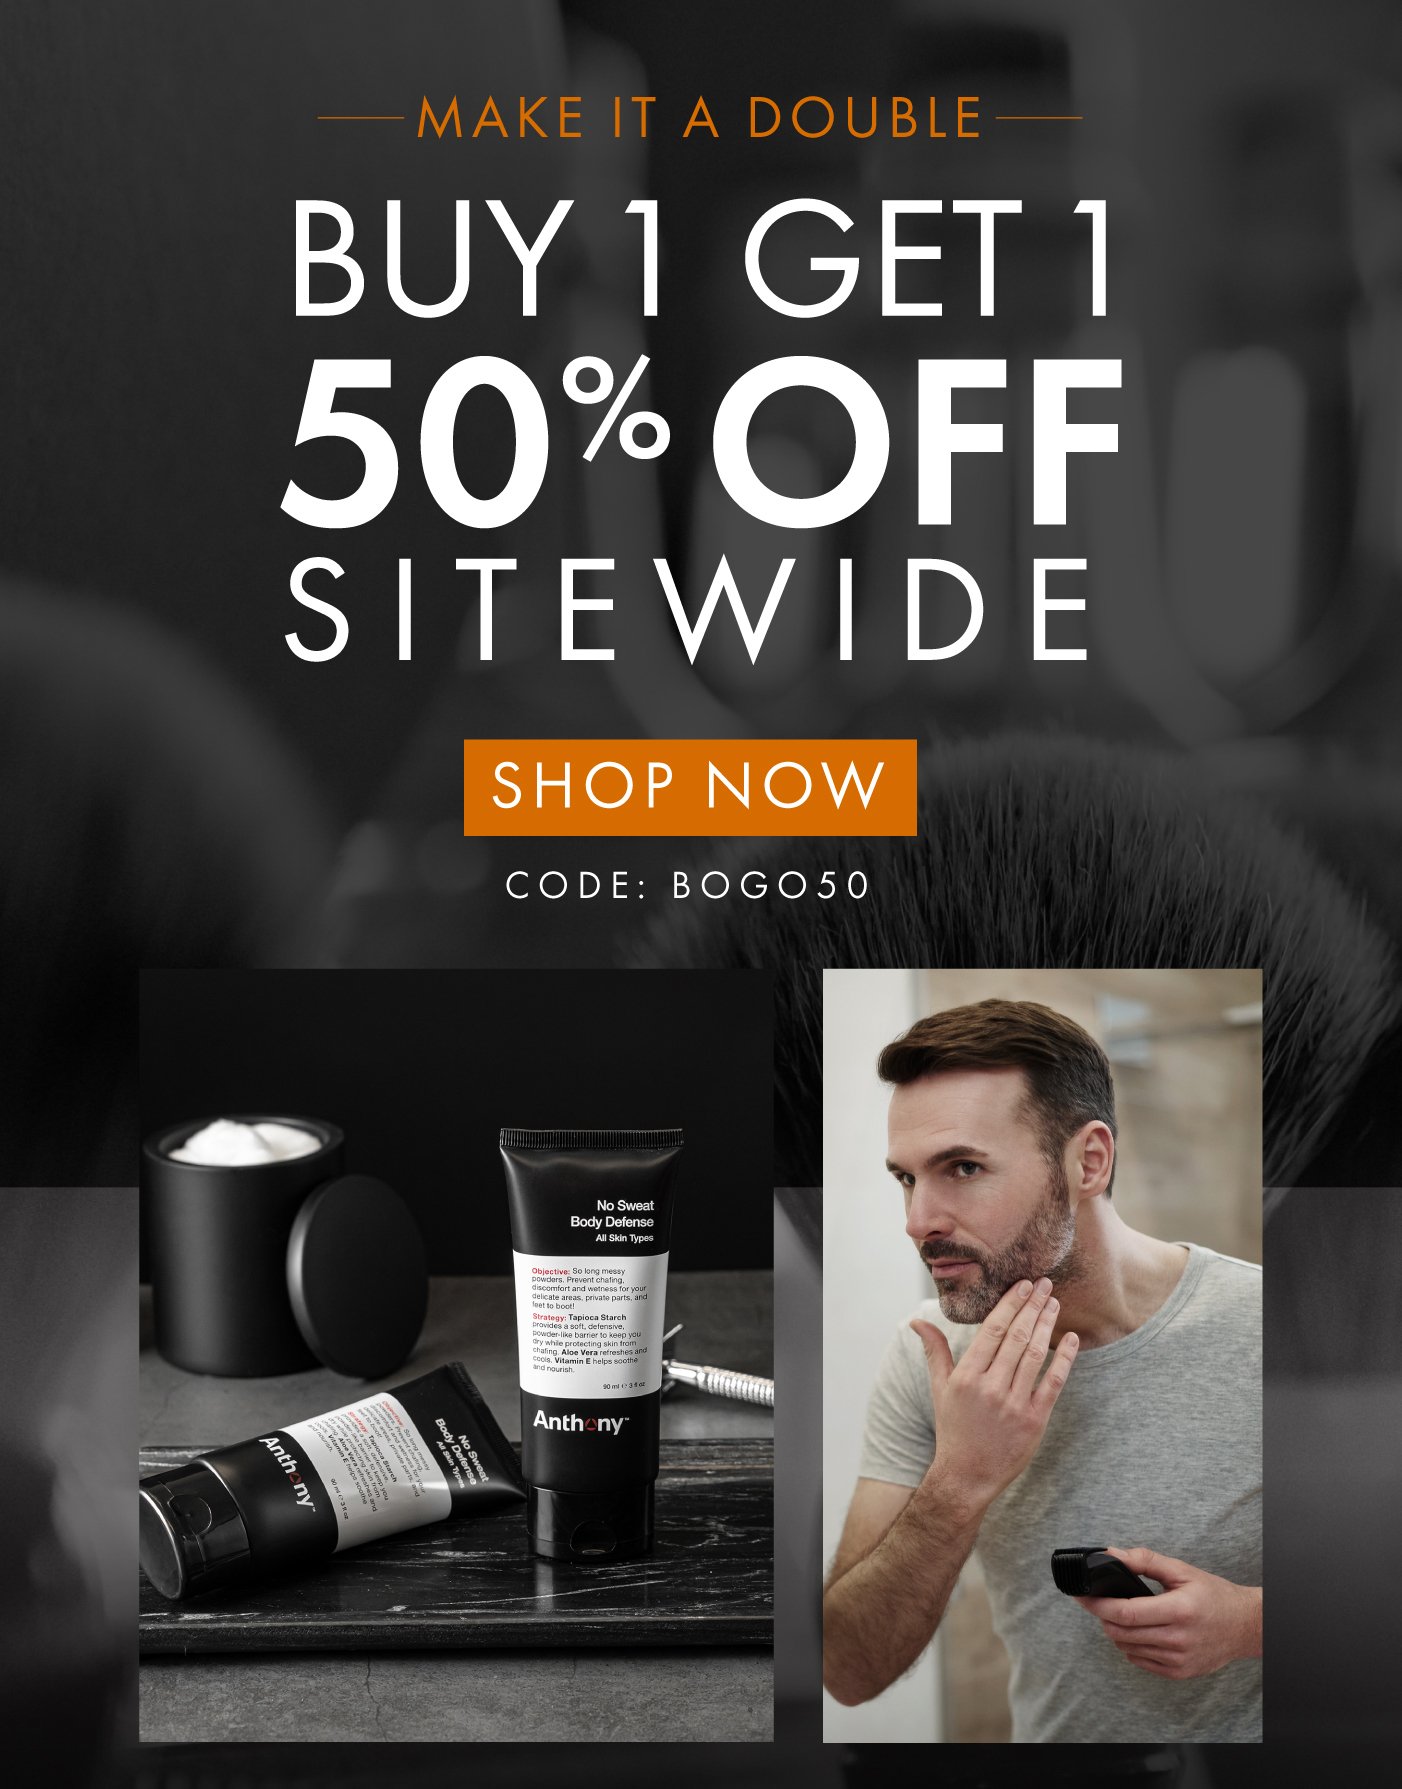 Buy 1 Get 1 50% off sitewide use code: BOGO50